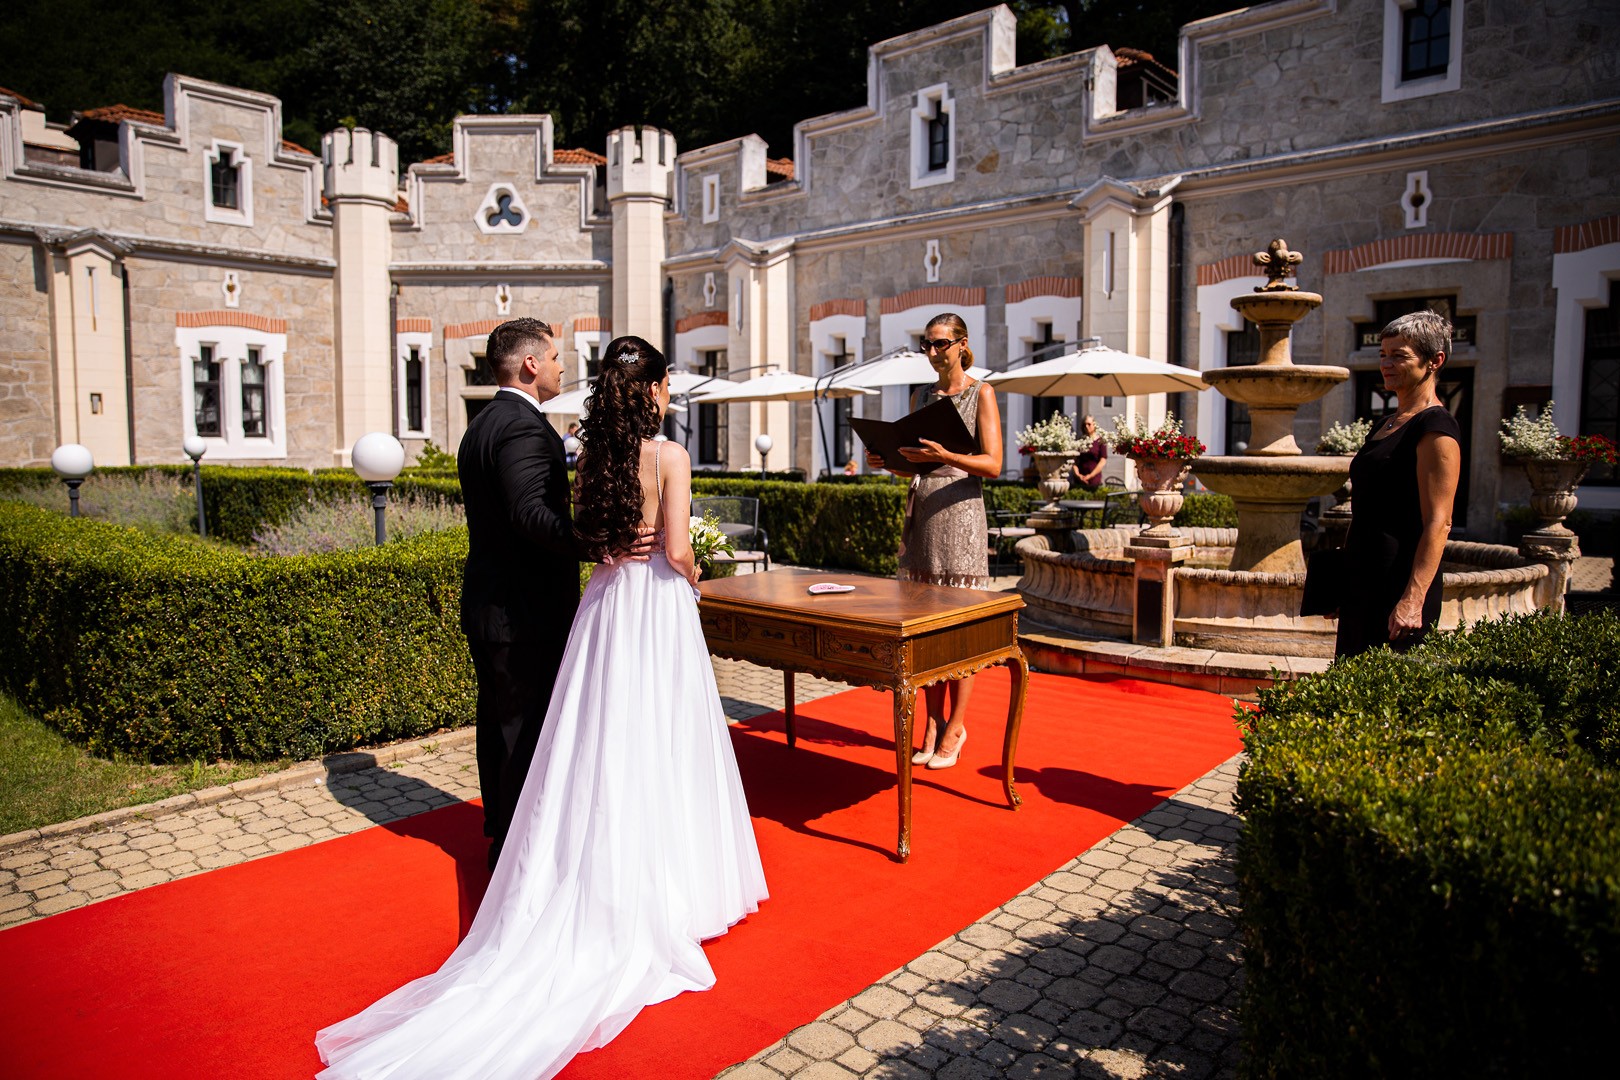 Picturesque dream wedding of Kloudy & Michal in Hluboká nad Vltavou. - 0155.jpg